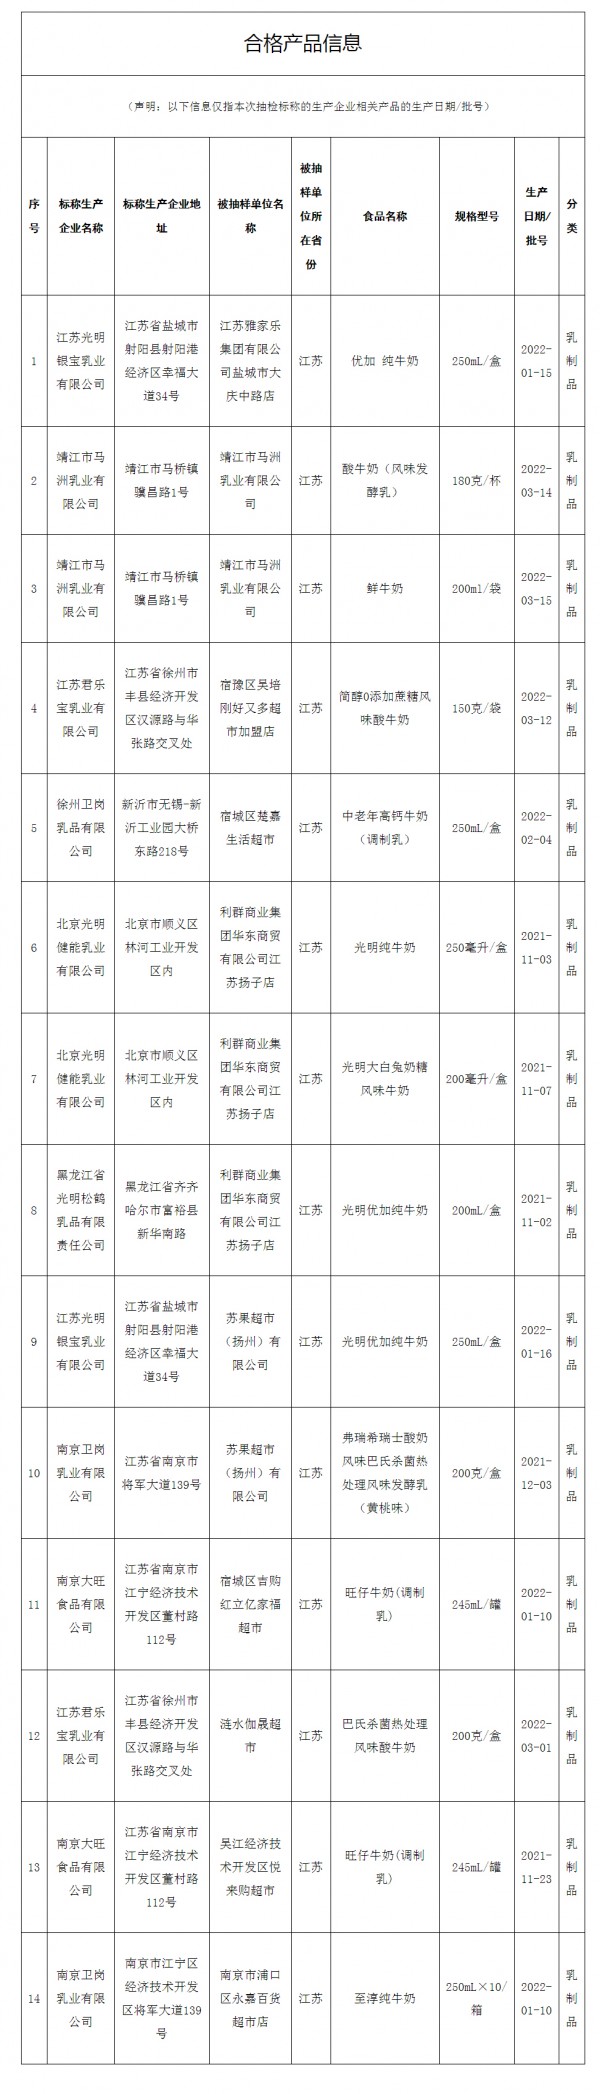 江苏省市场监督管理局抽检乳制品14批次 全部合格